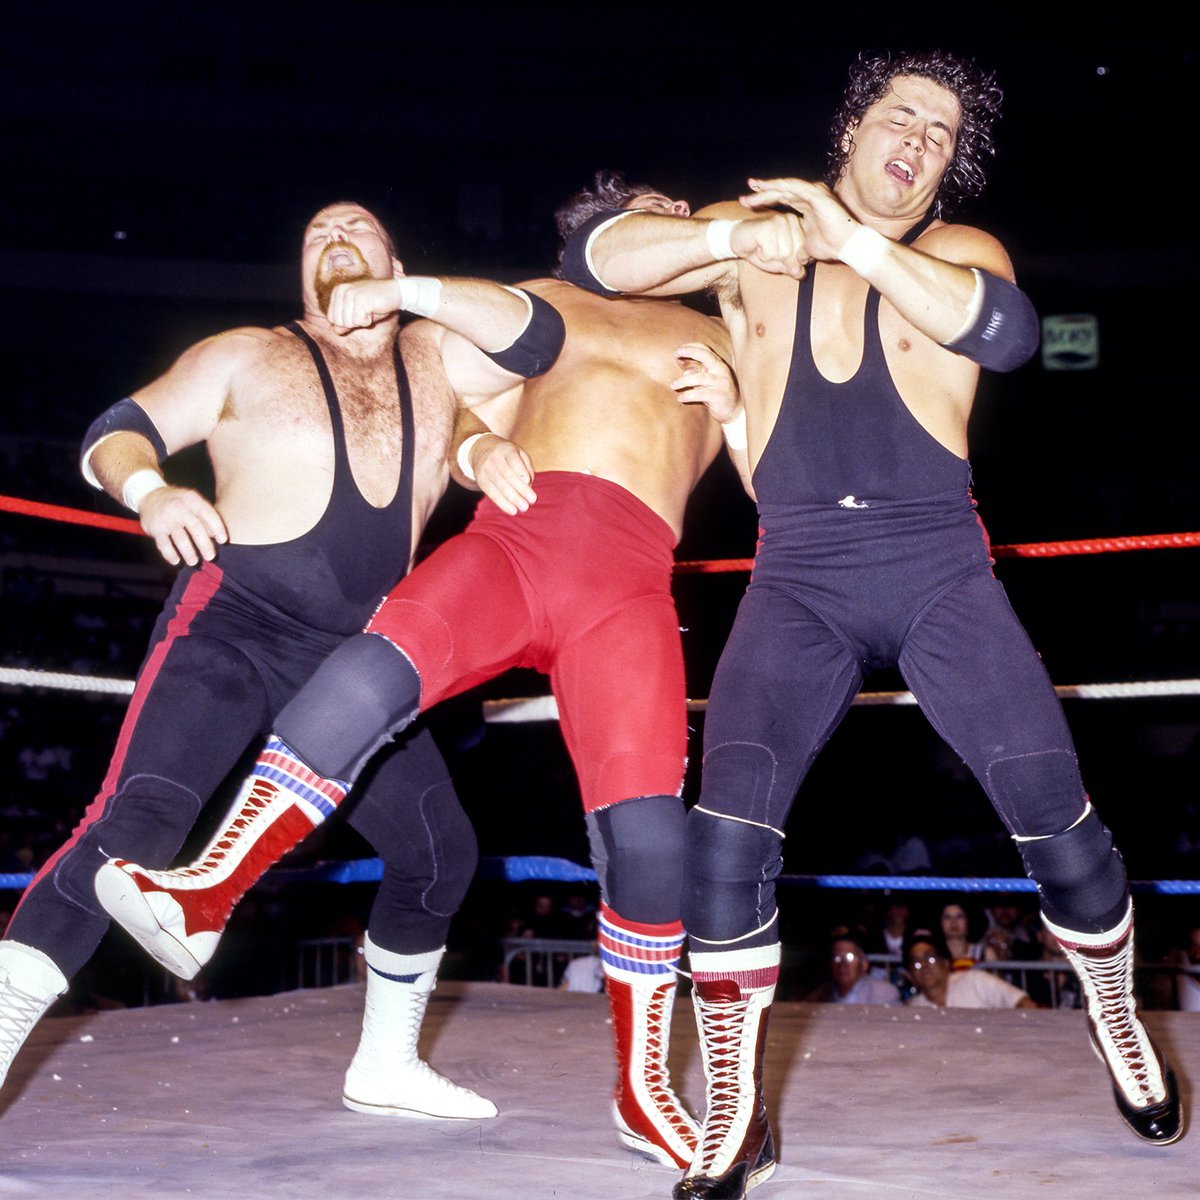 📸 WWF Action Shot! #WWF #WWE #Wrestling #HartFoundation